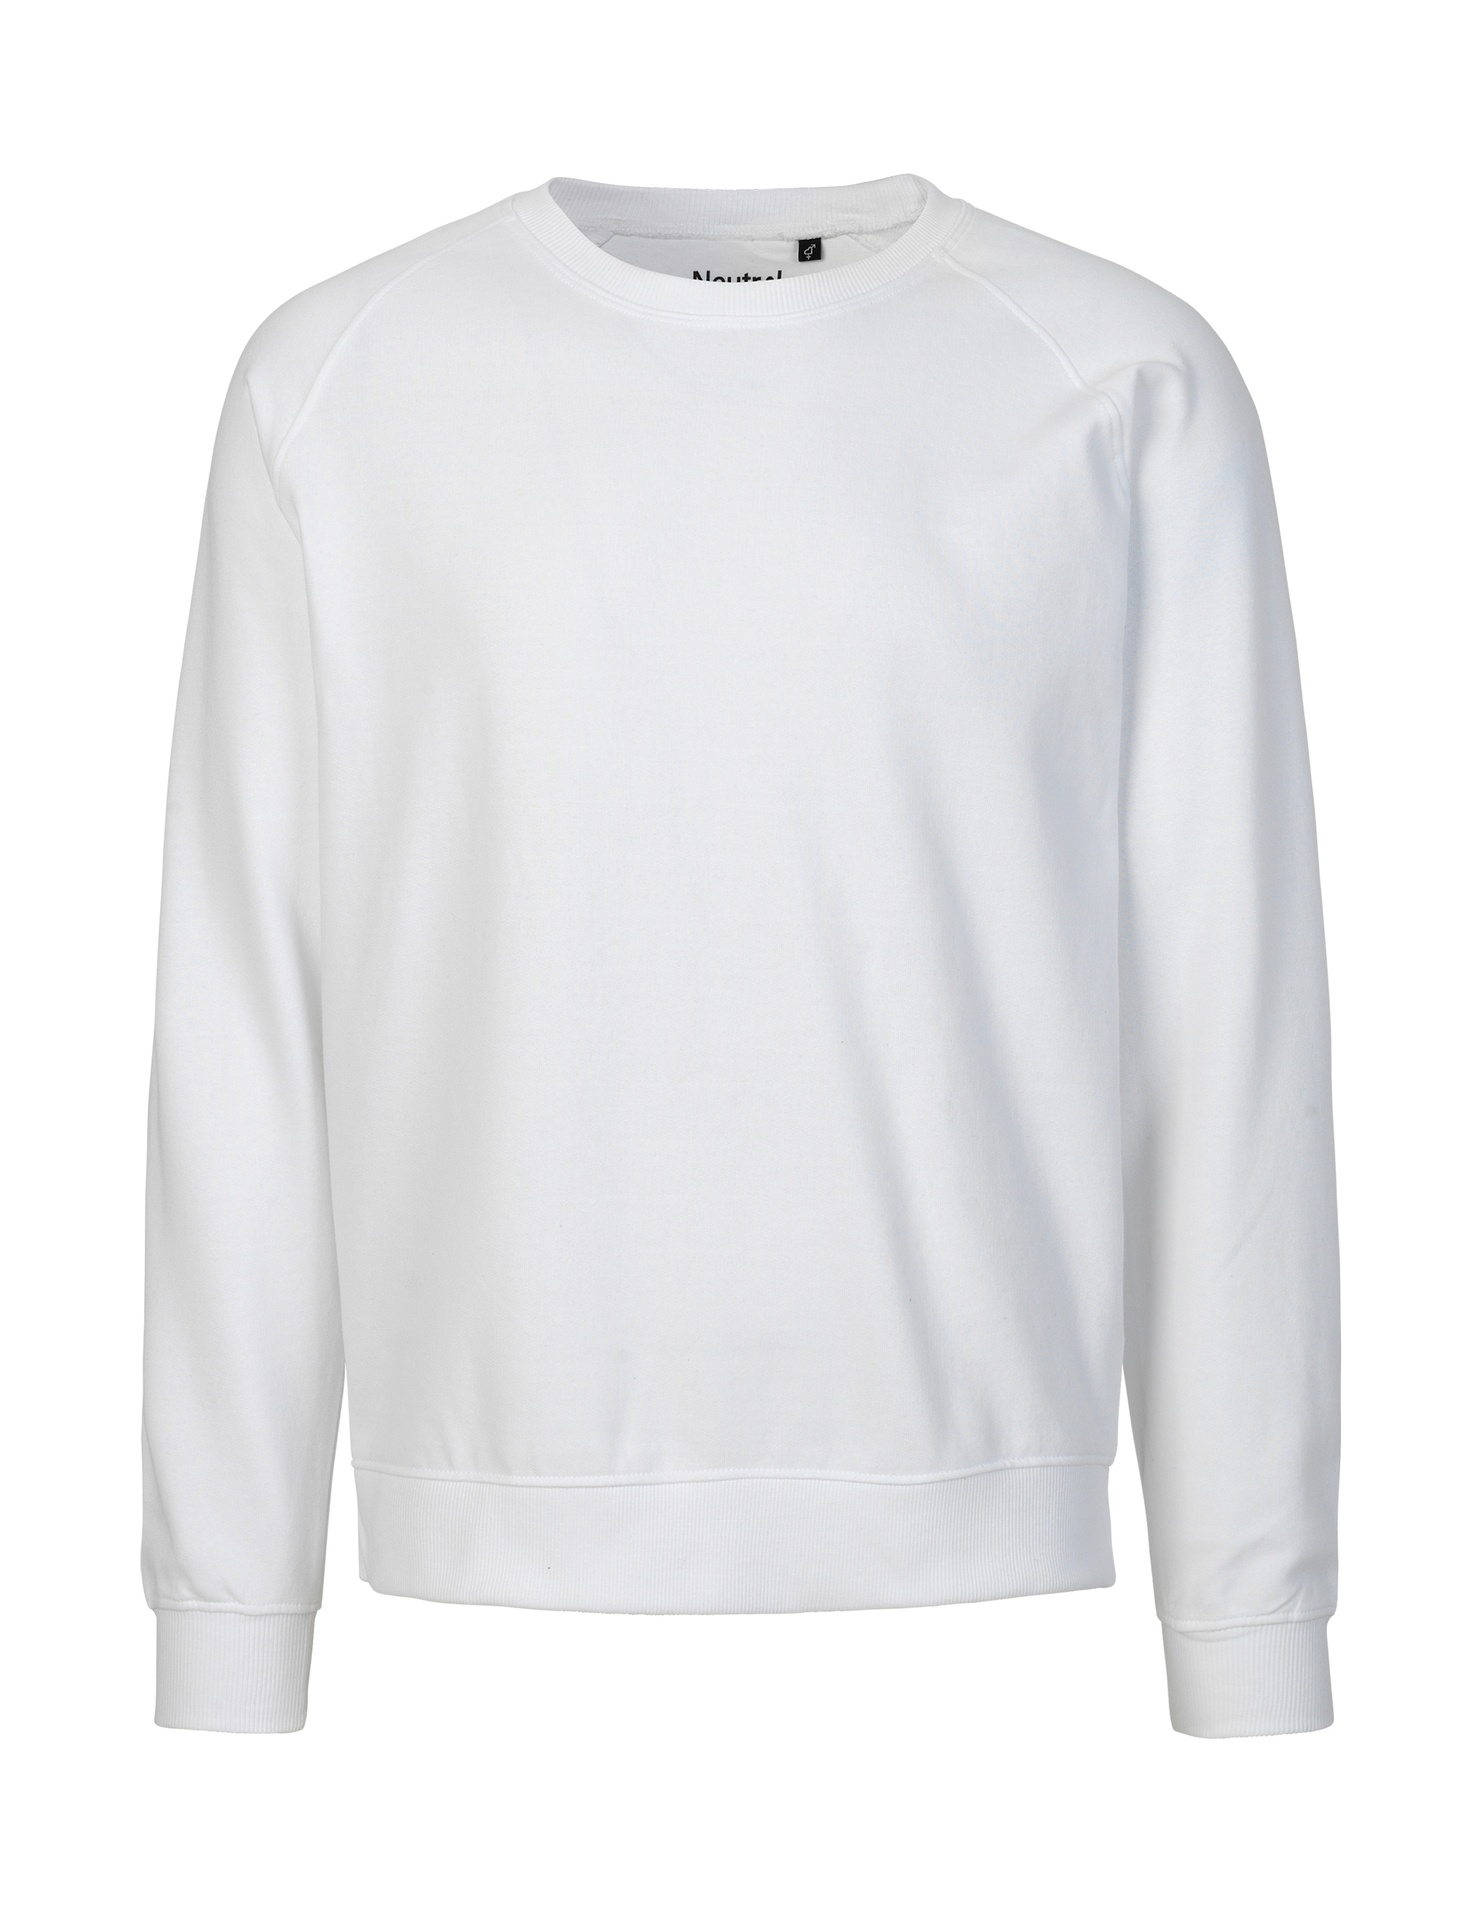 [PR/02655] Unisex Sweatshirt (White 01, L)